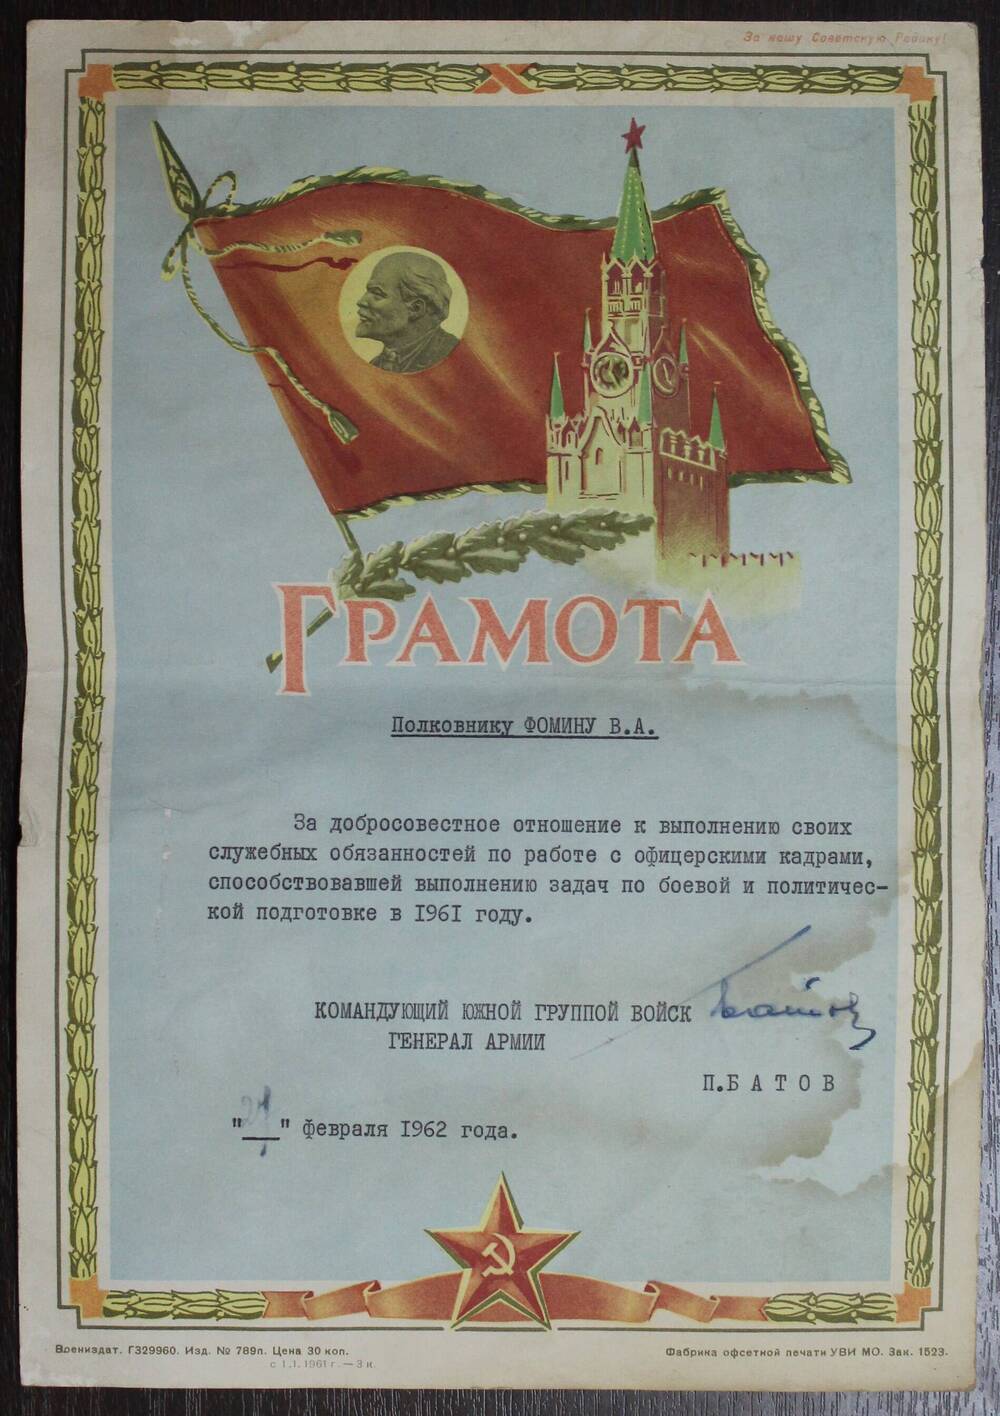 Грамота Фомину В.А. от 27.02.62г. за подписью генерала армии А.Батова